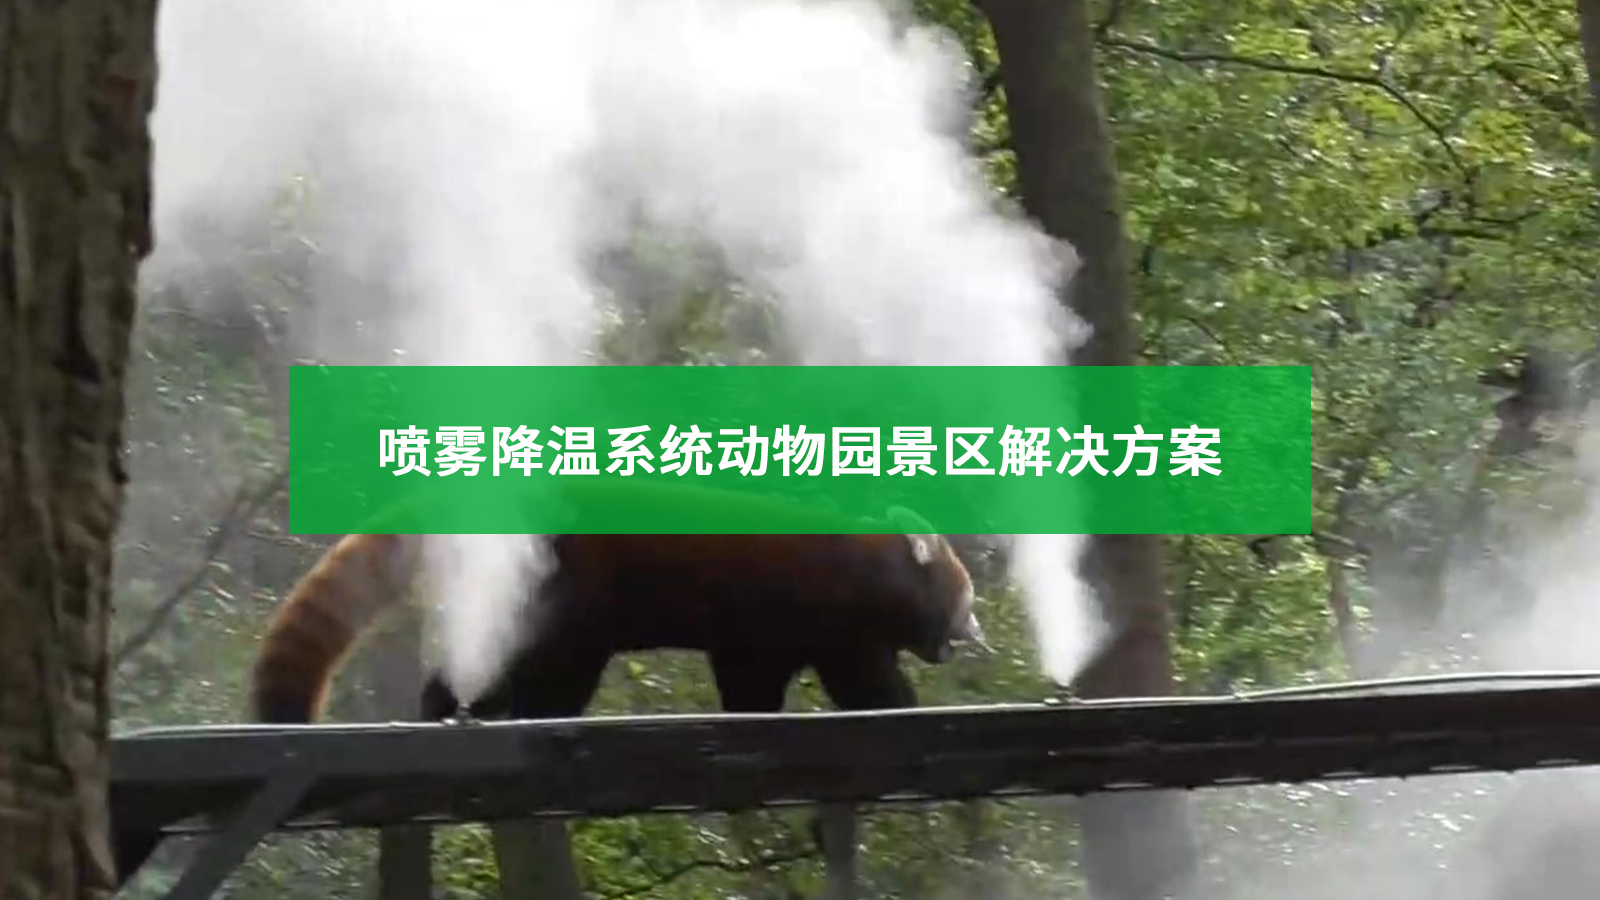 喷雾降温系统动物园景区解决方案